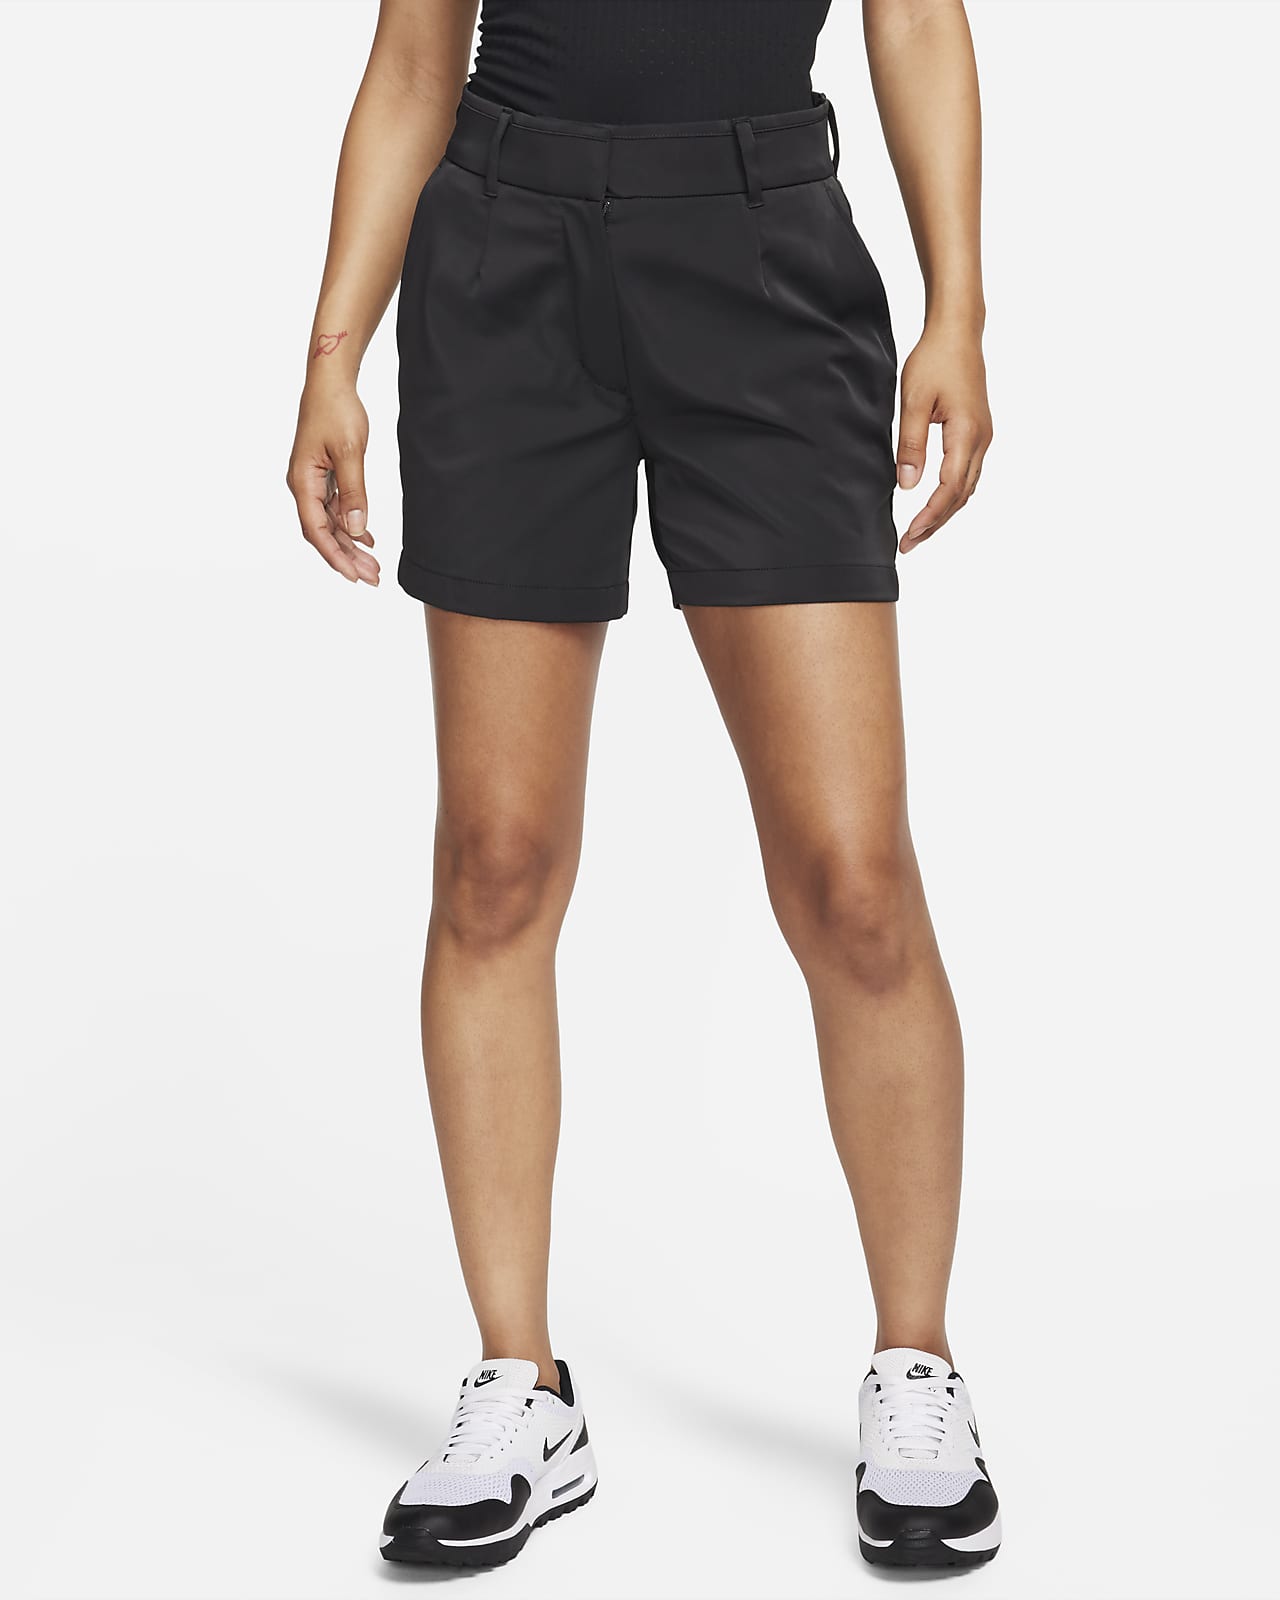 Tech Twill Long Golf Short: Women's Clothing, Bottoms